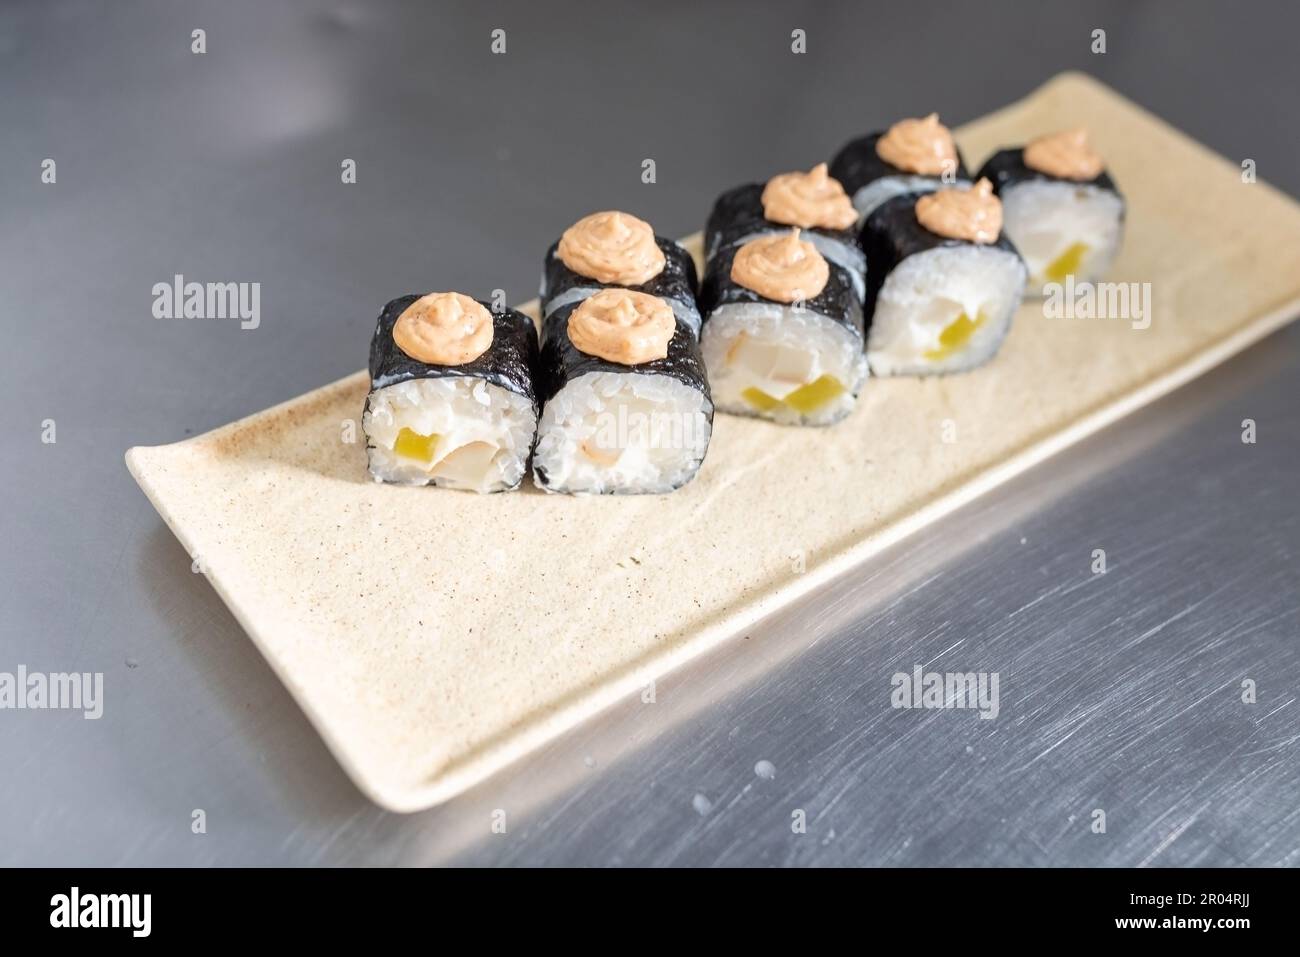 Sushi au fromage, daikon et calmar, sauce épicée, sur un tableau blanc. Photo de haute qualité Banque D'Images